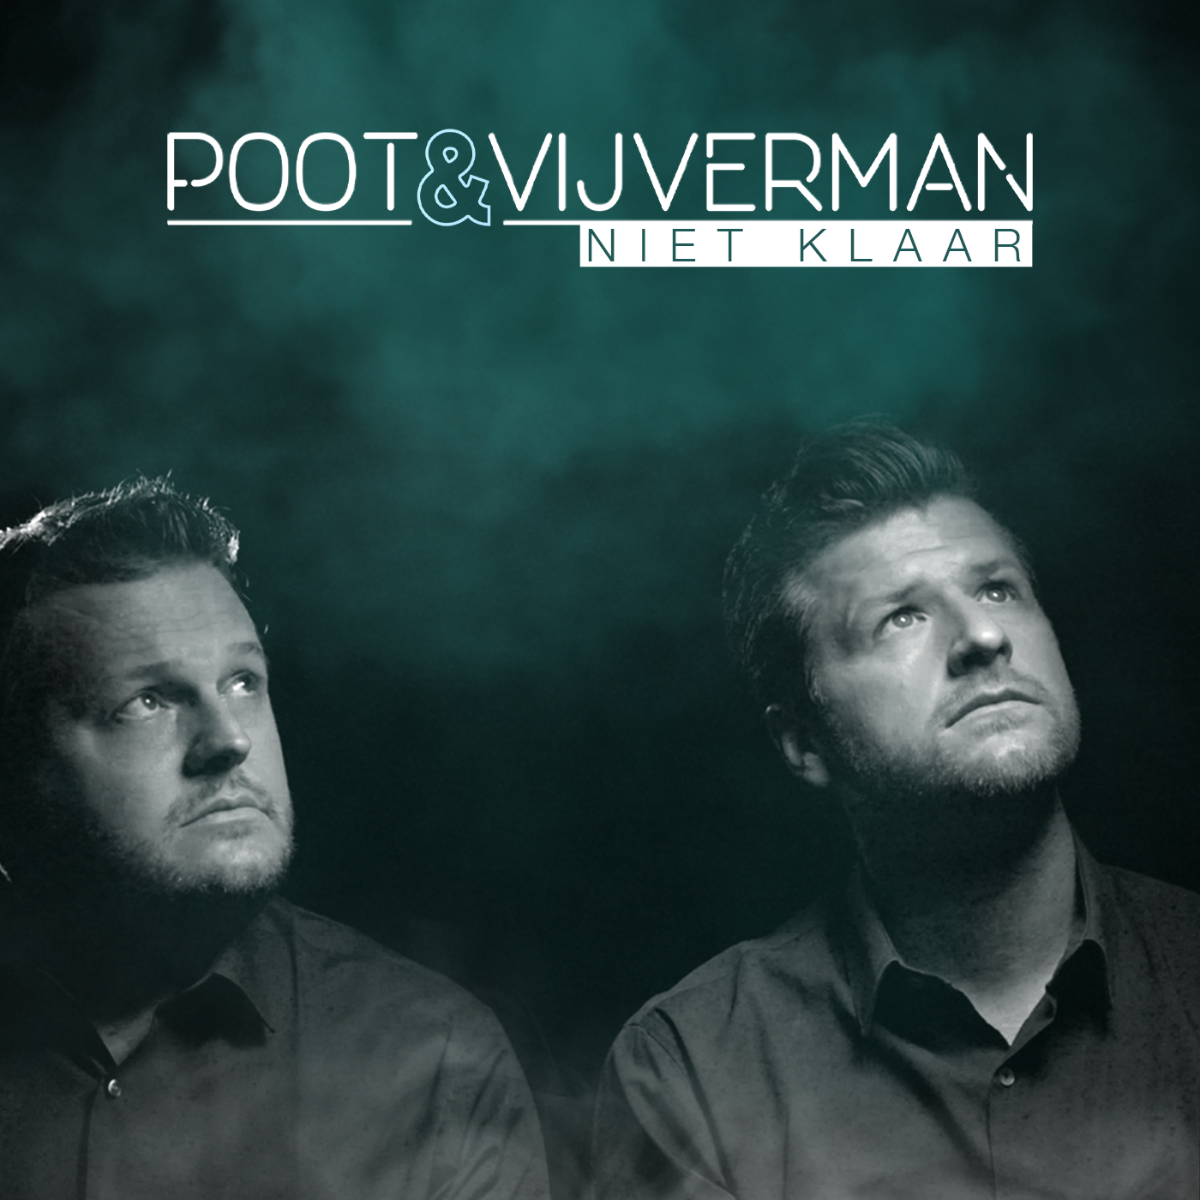 Poot & Vijverman steken met nieuwe single 'Niet klaar' een muzikaal hart onder de riem